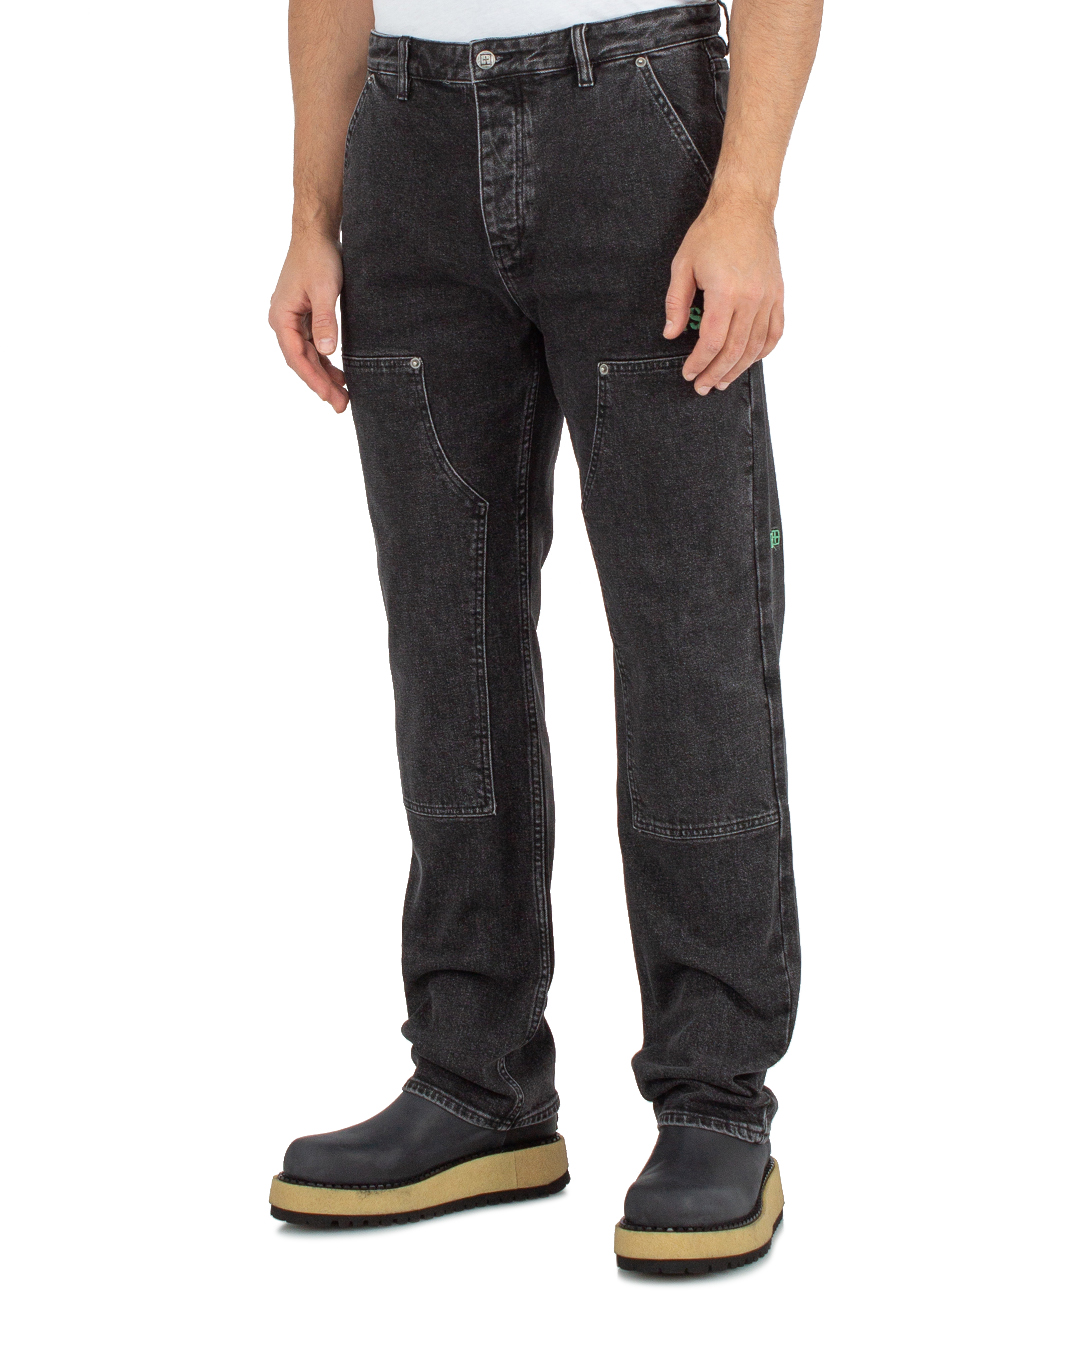 джинсы KSUBI 2 MFA23PA007 черный 30, размер 30 - фото 3